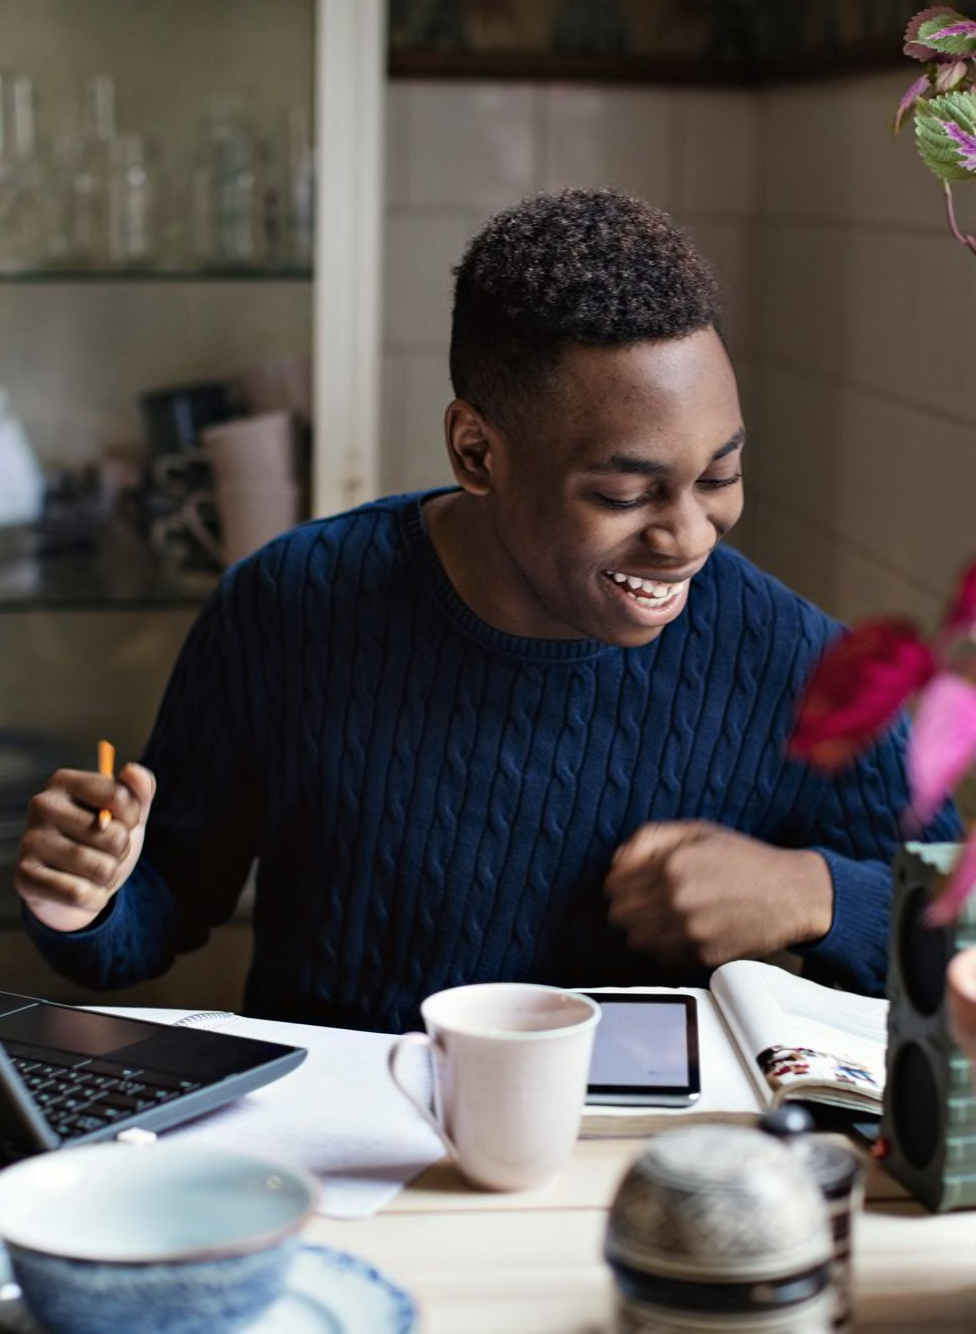 En mandlig elev bliver undervist hjemme med en bærbar computer og tablet og smiler.